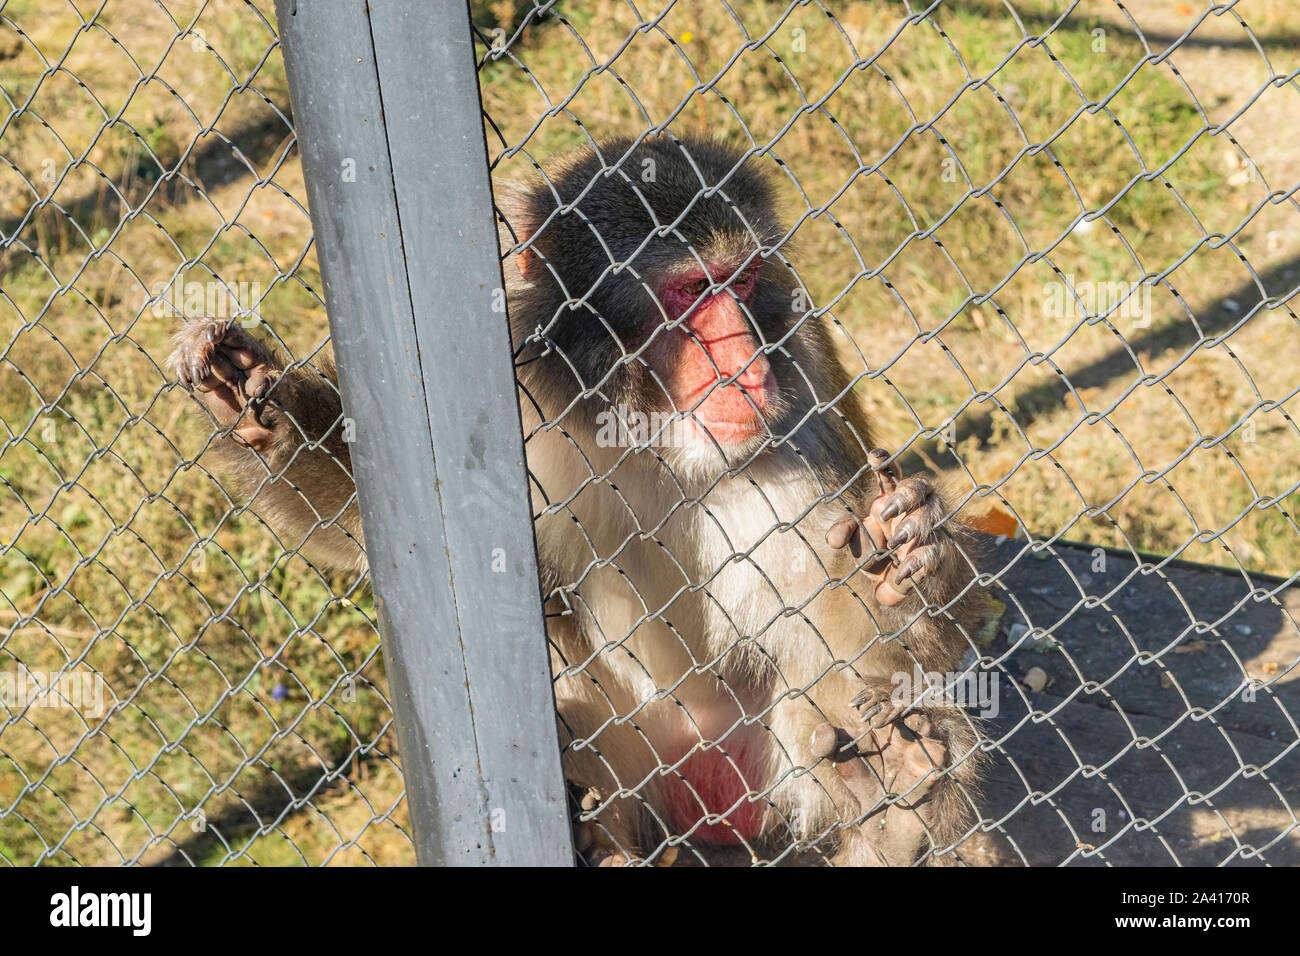 Nach japanischen Makaken im Zoo in einem Käfig Stockfoto